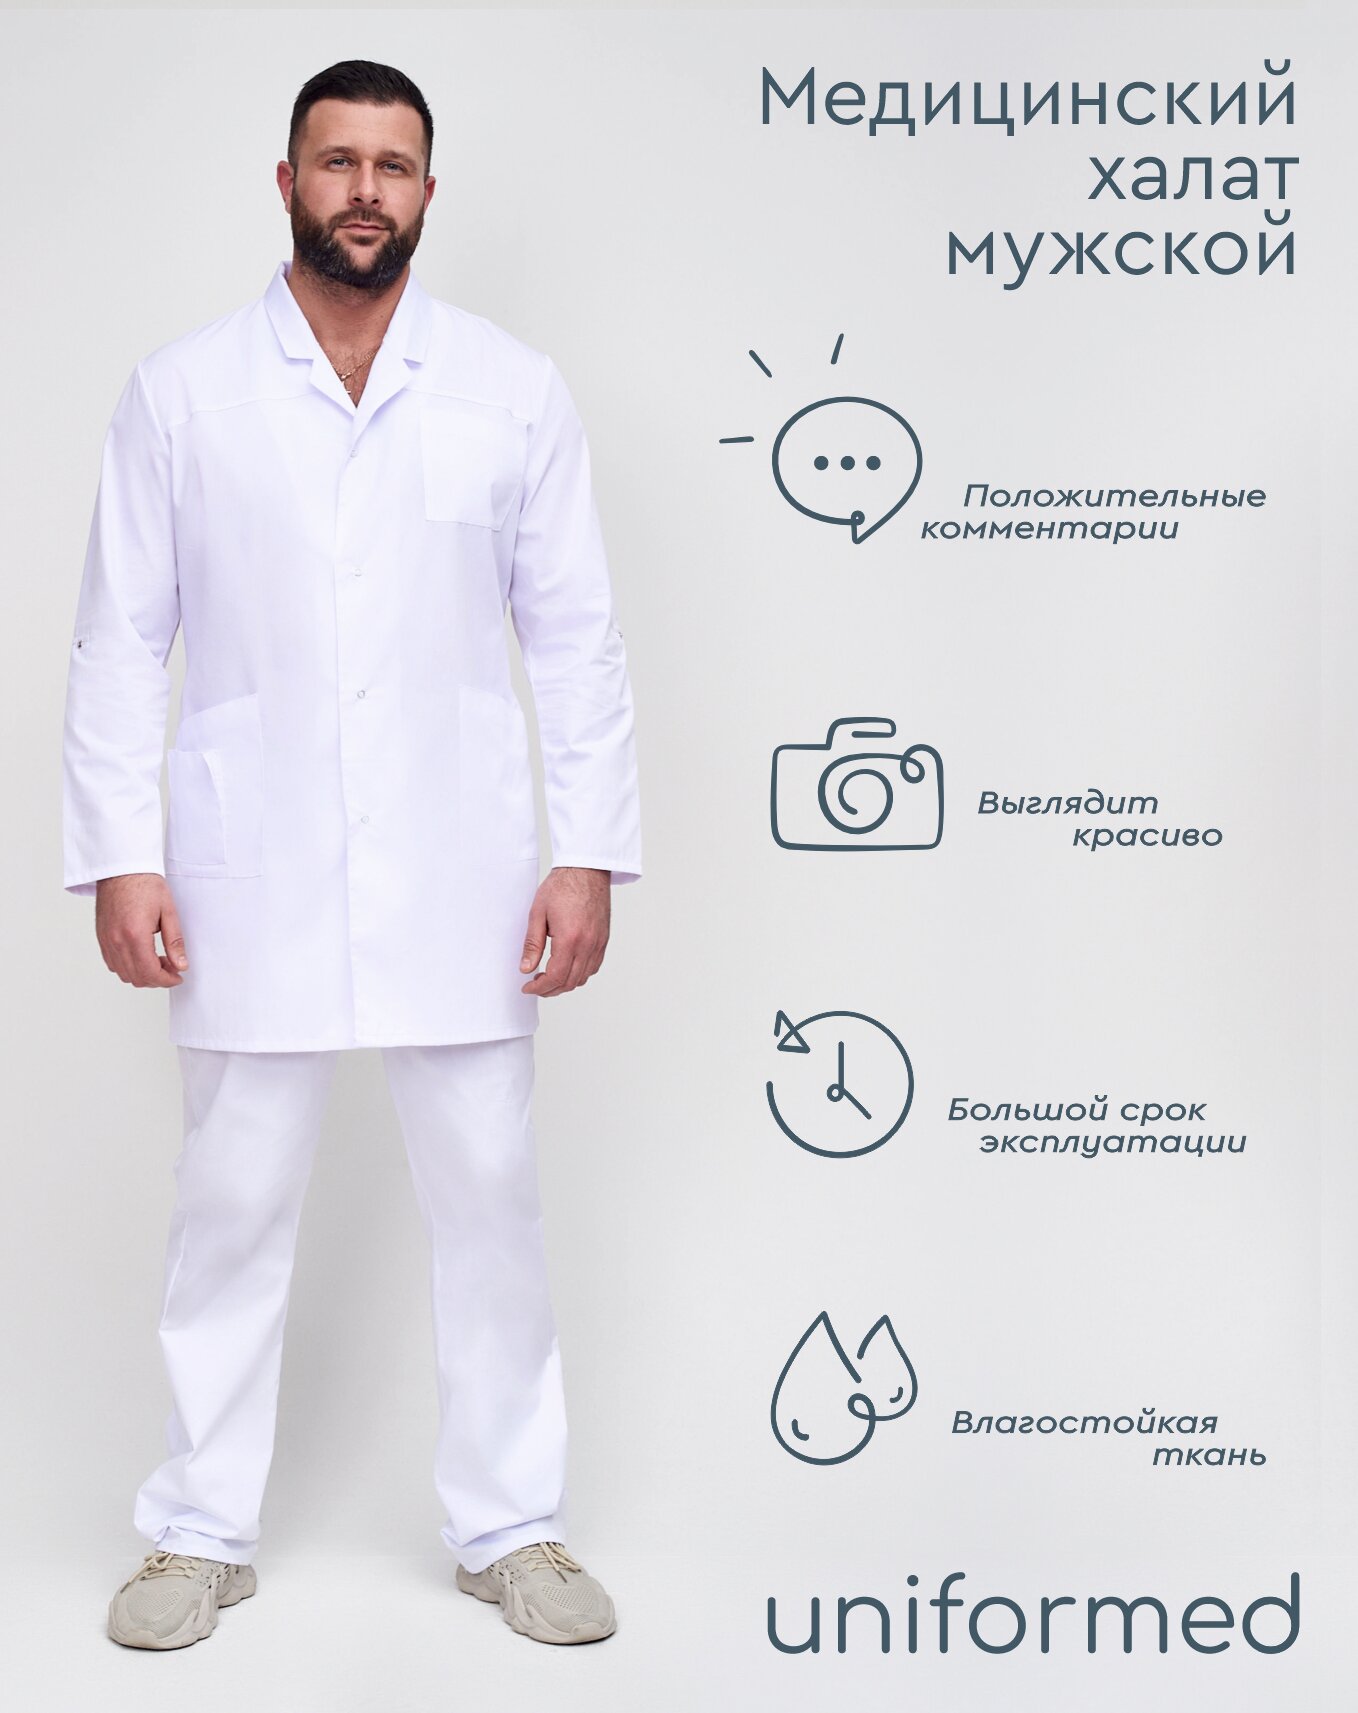 Медицинский мужской халат 129.3.1 Uniformed, ткань сатори, укороченный, рукав длинный, на кнопках, цвет белый, размер 62